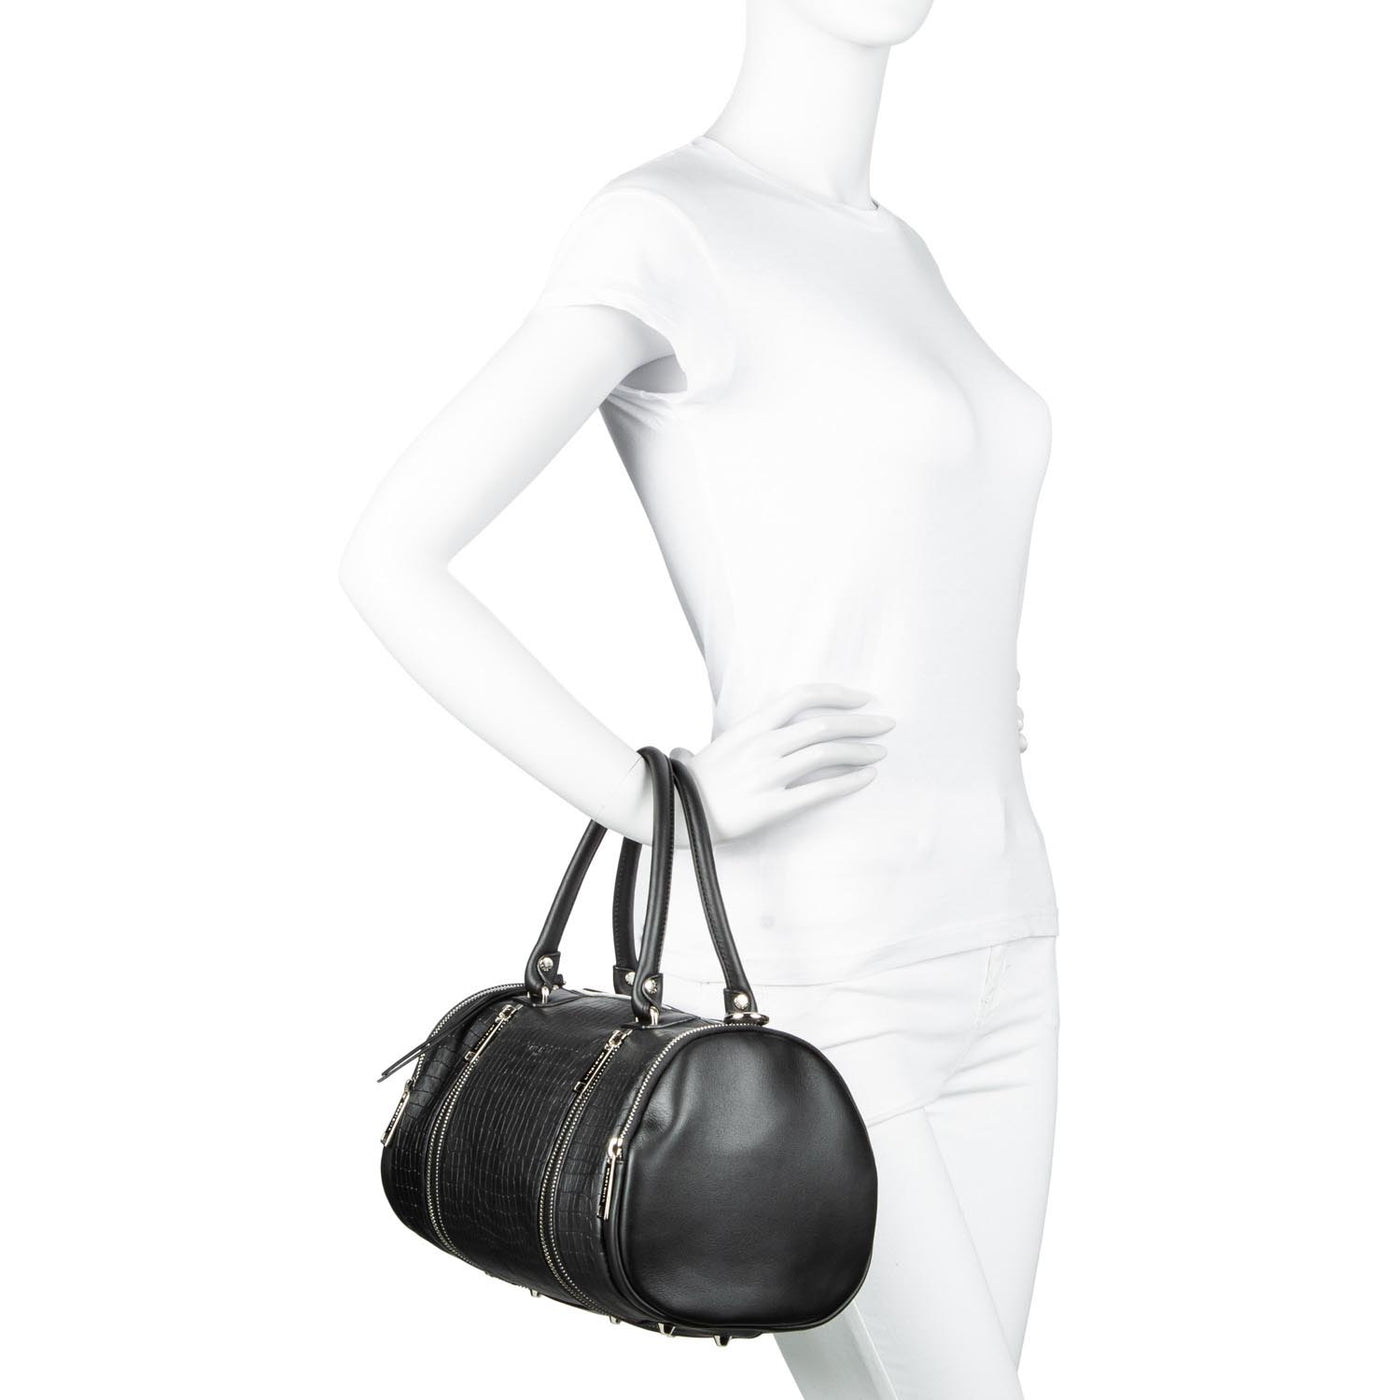 sac polochon - soft vintage #couleur_noir